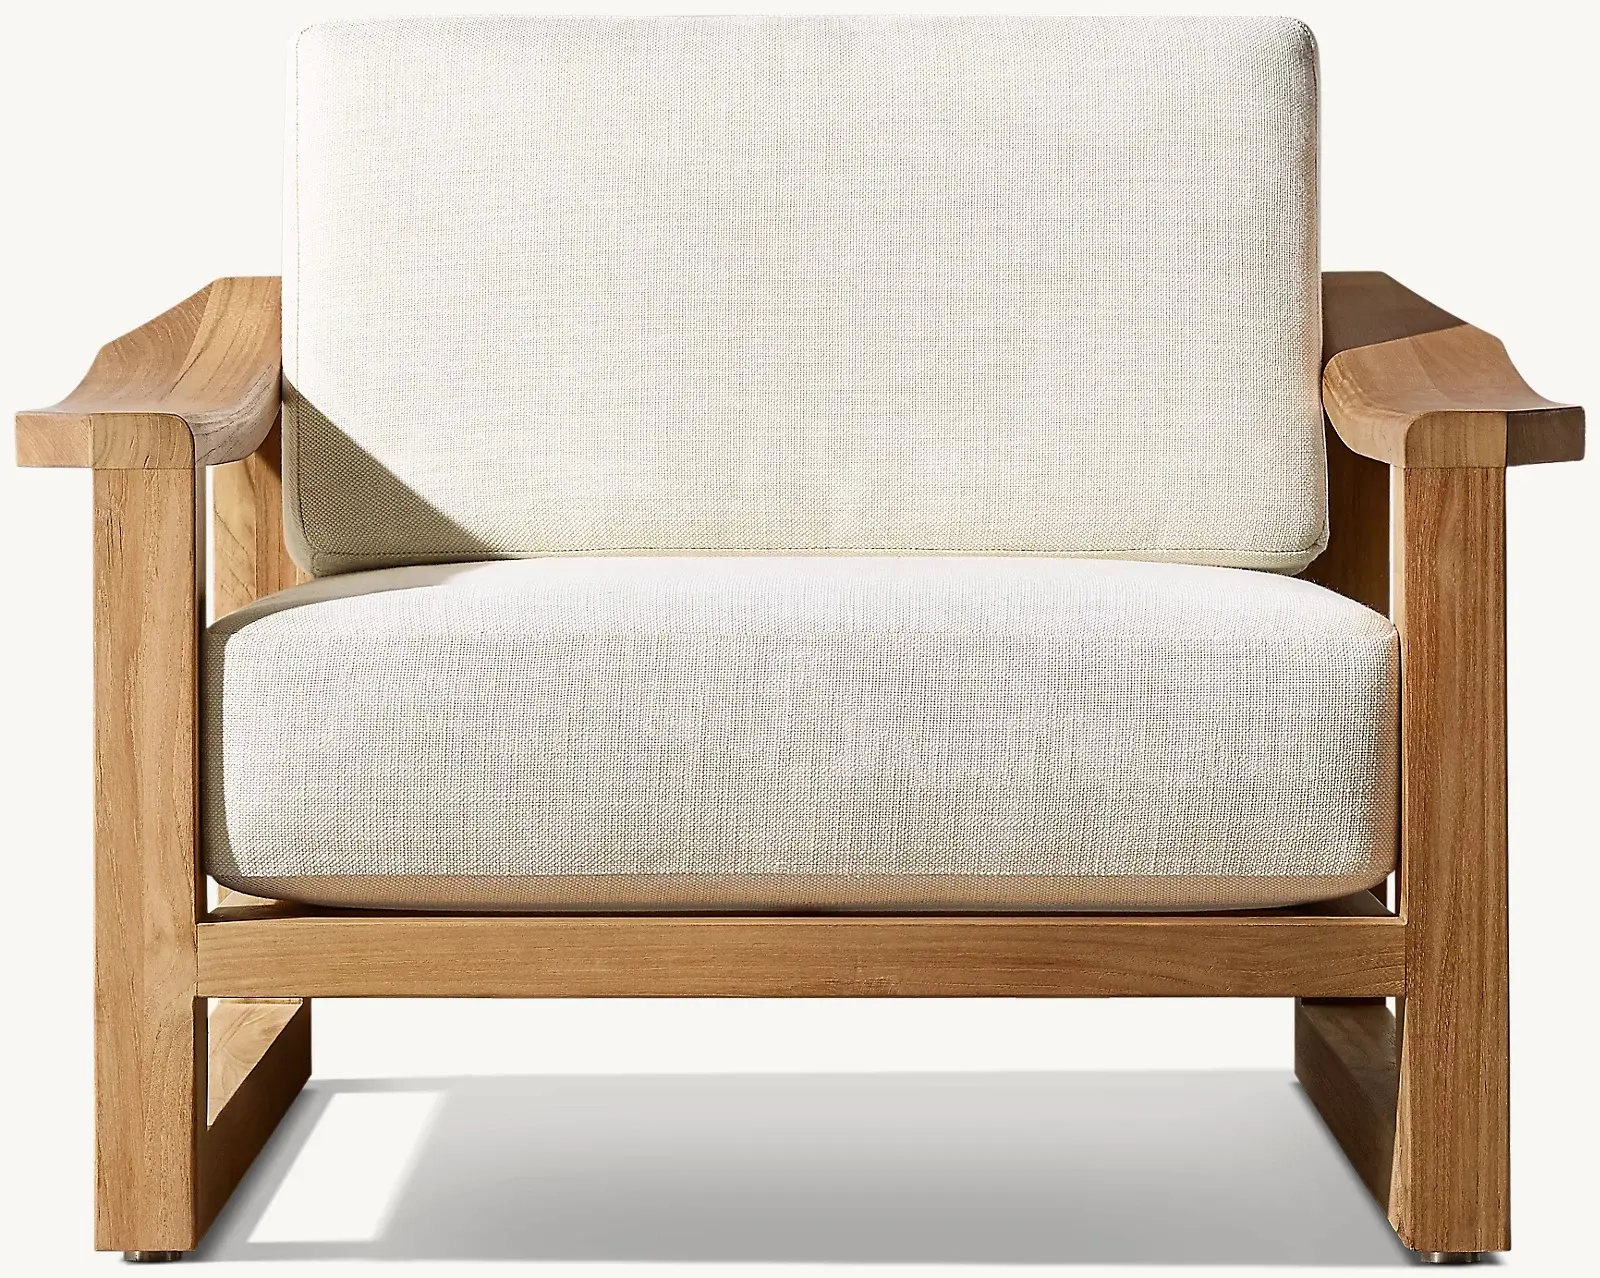 Mobília da cadeira do sofá do jardim madeira teca Material natural resistido cor revestimento mobília exterior moderna da cadeira do sofá do estilo